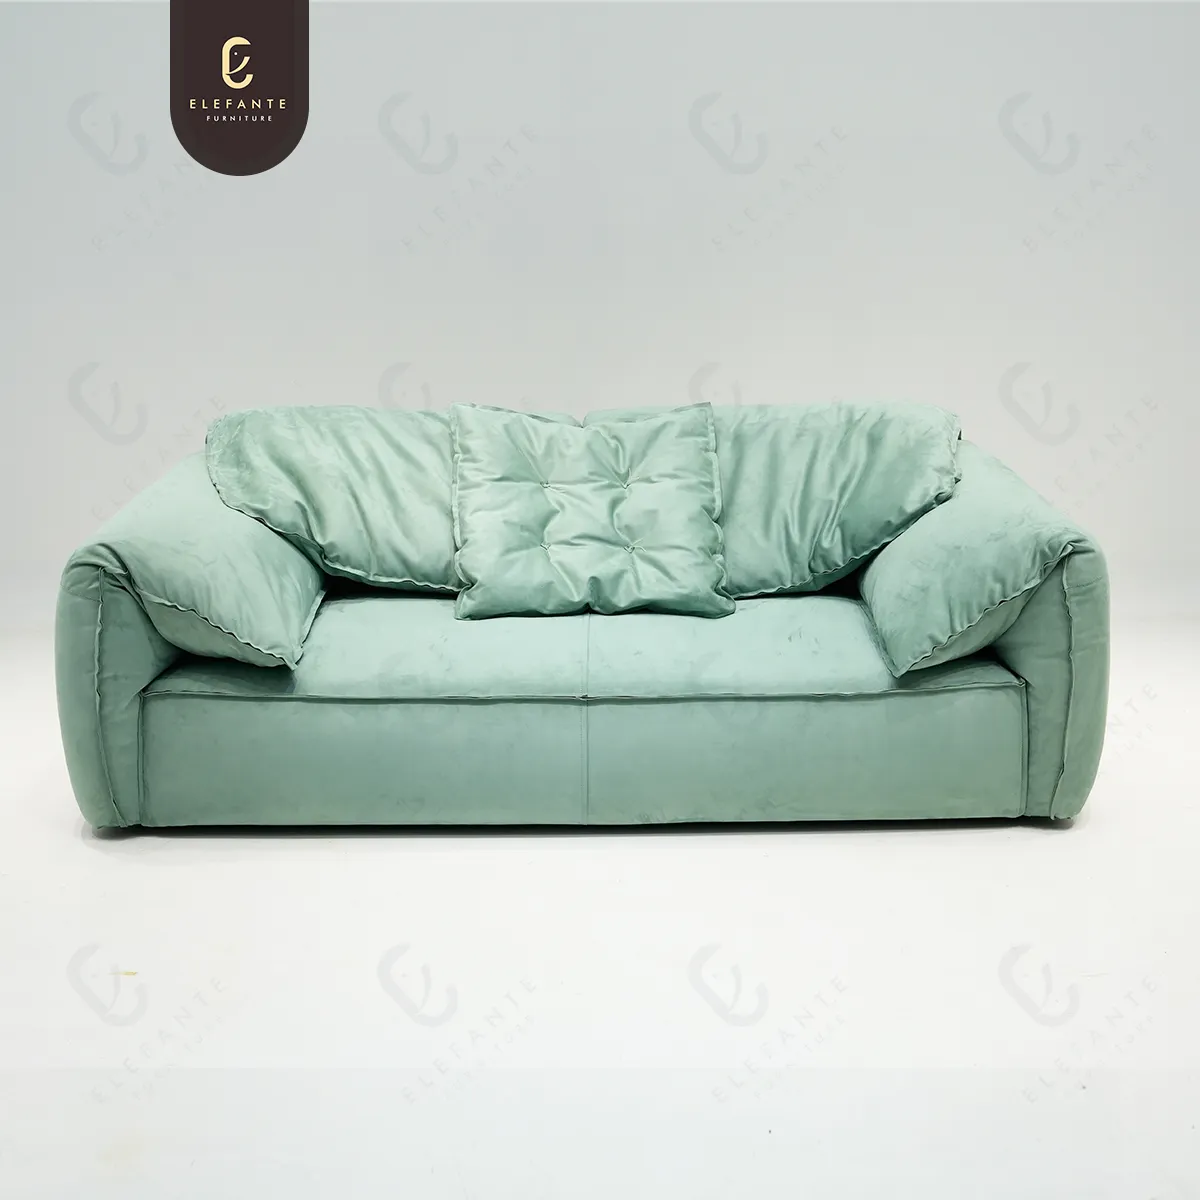 Meubles de salon minimalistes italiens Oreille d'éléphant Nouveau canapé en tissu moderne